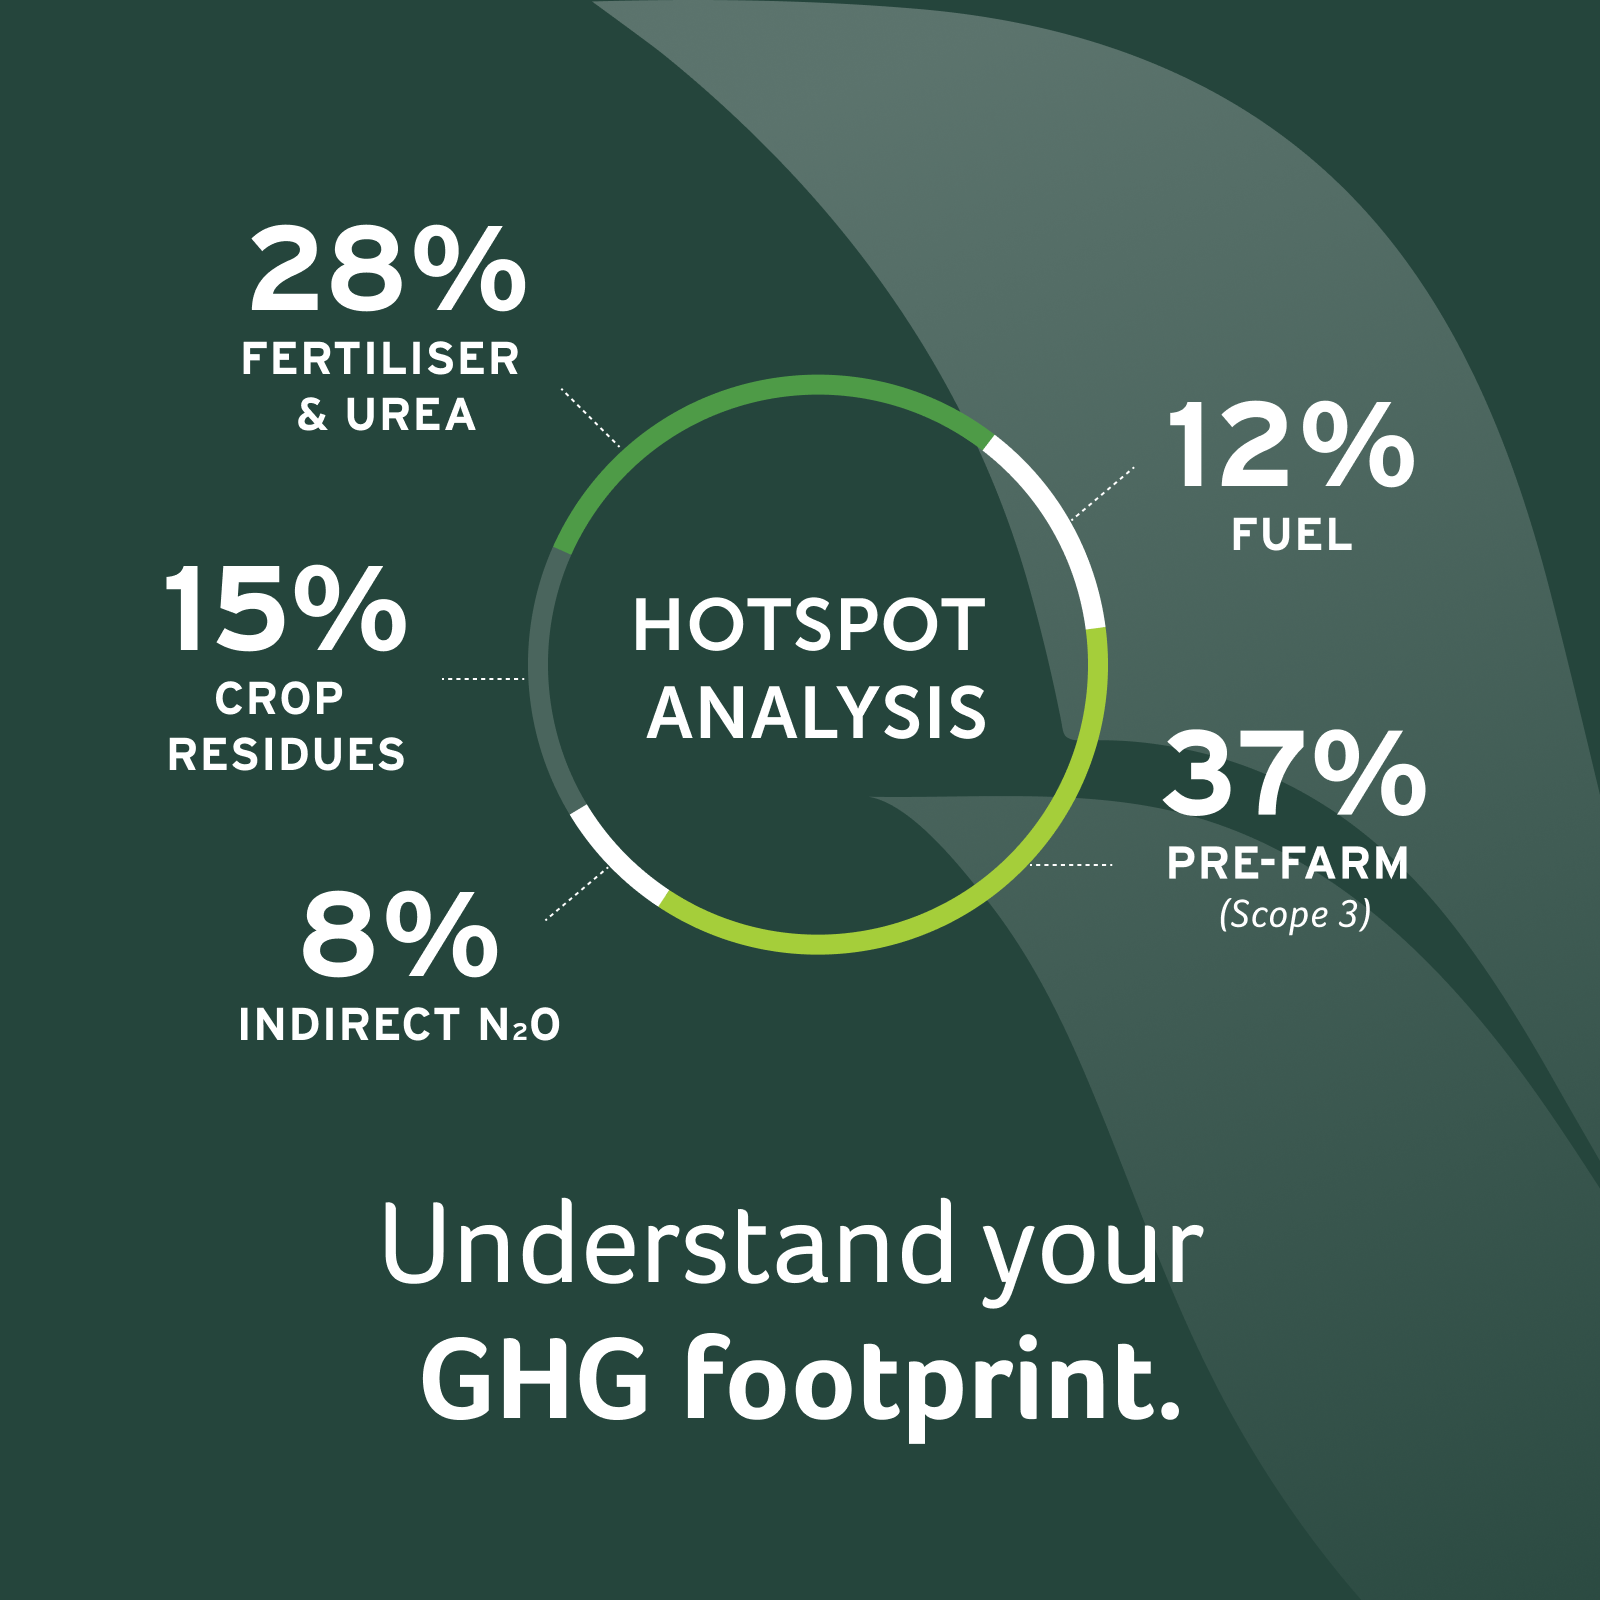 Understand your GHG footprint.